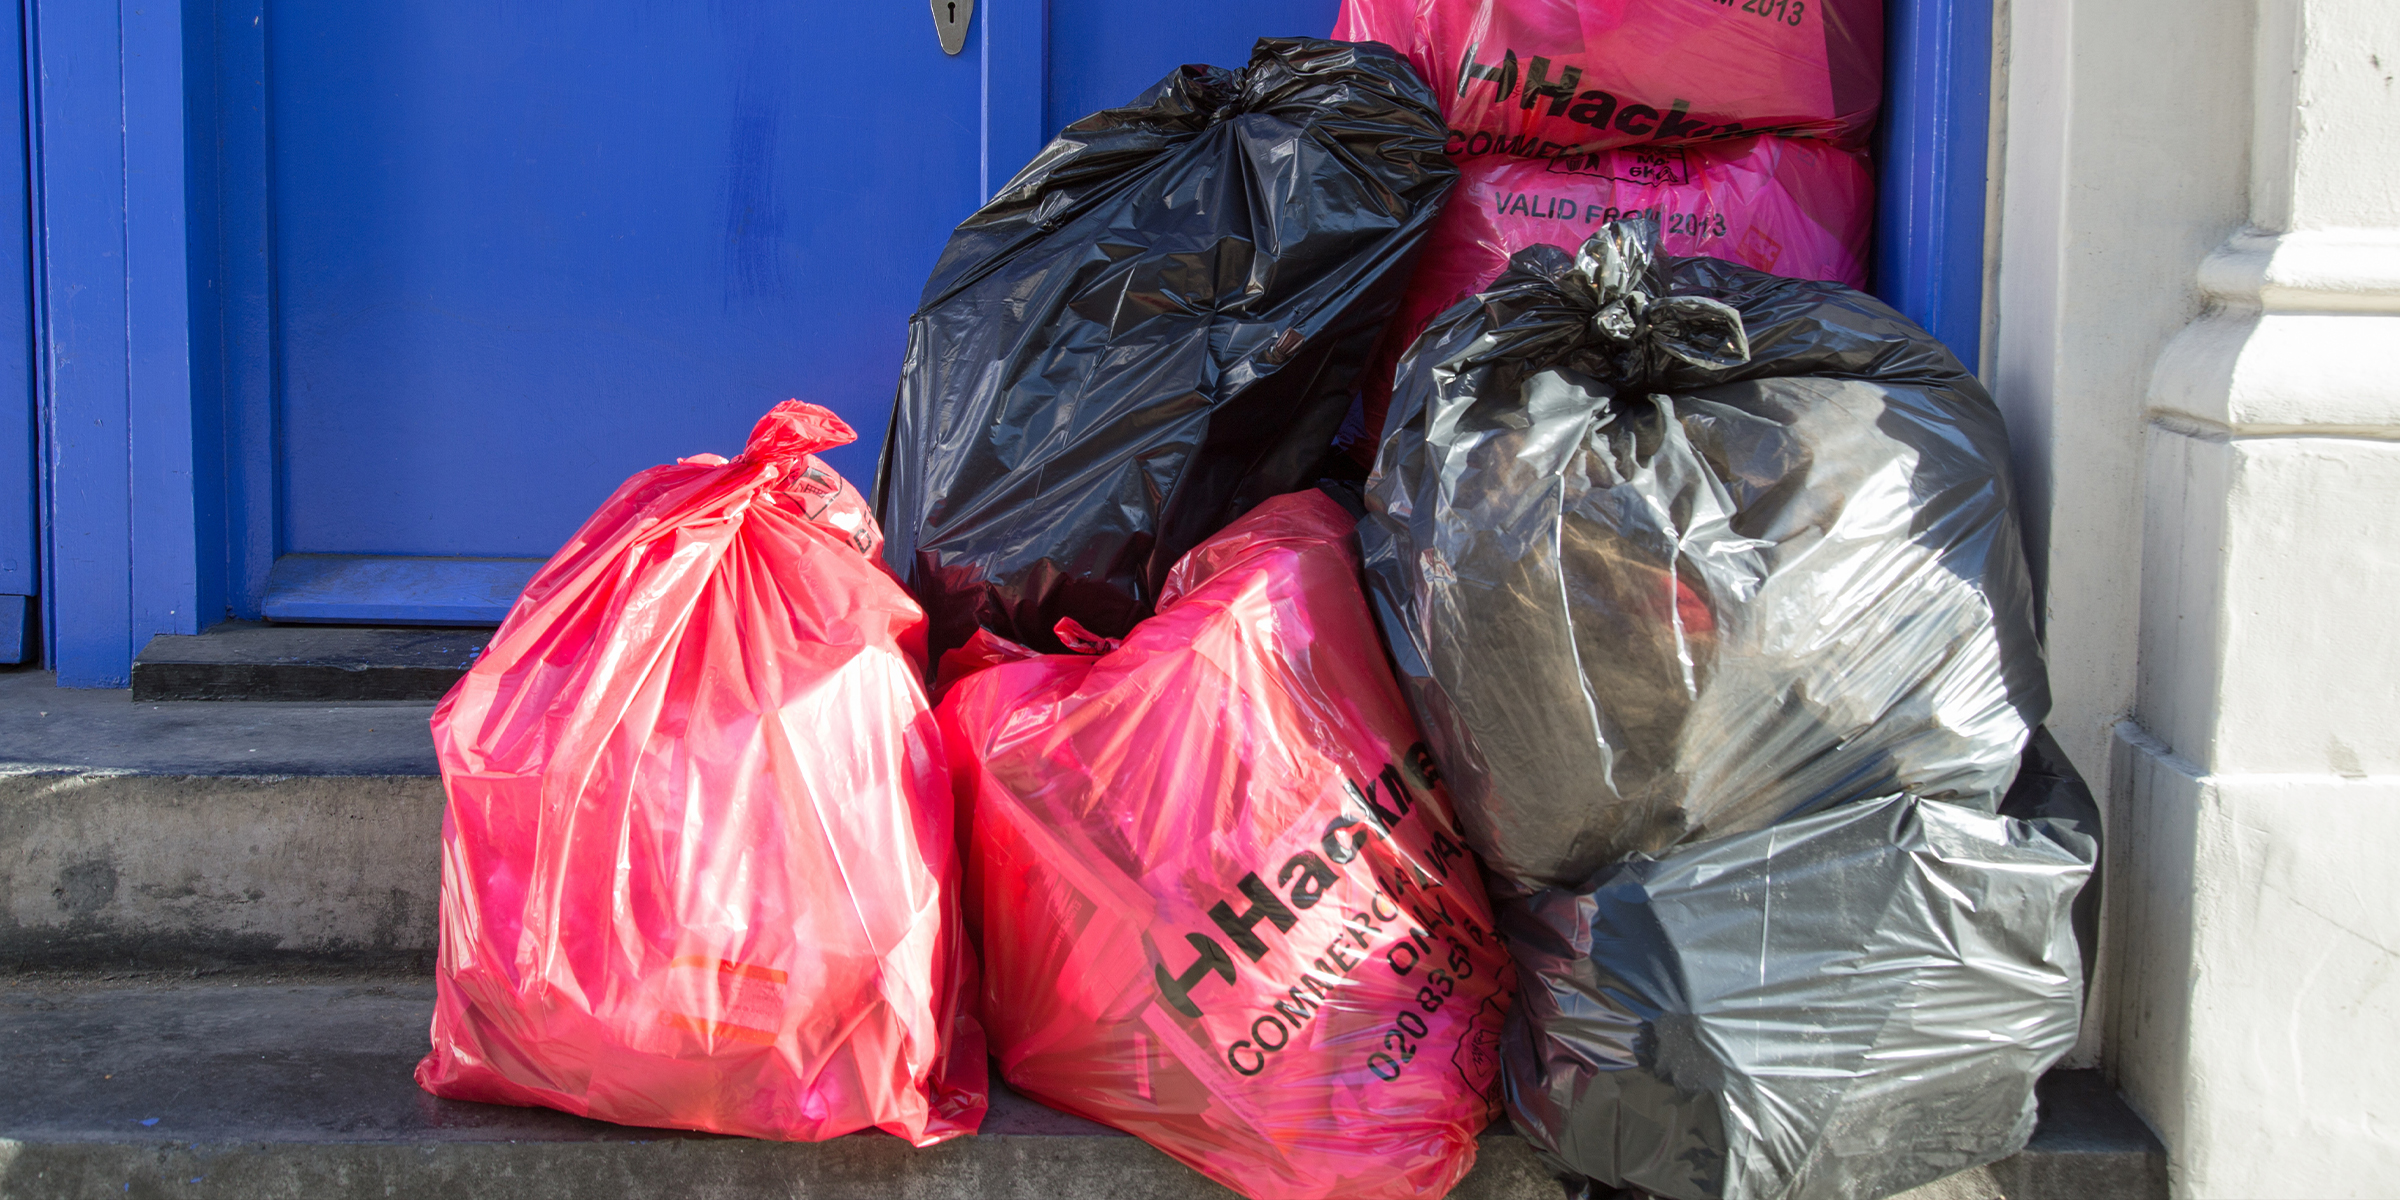 Müllsäcke an der Tür. | Quelle: Shutterstock